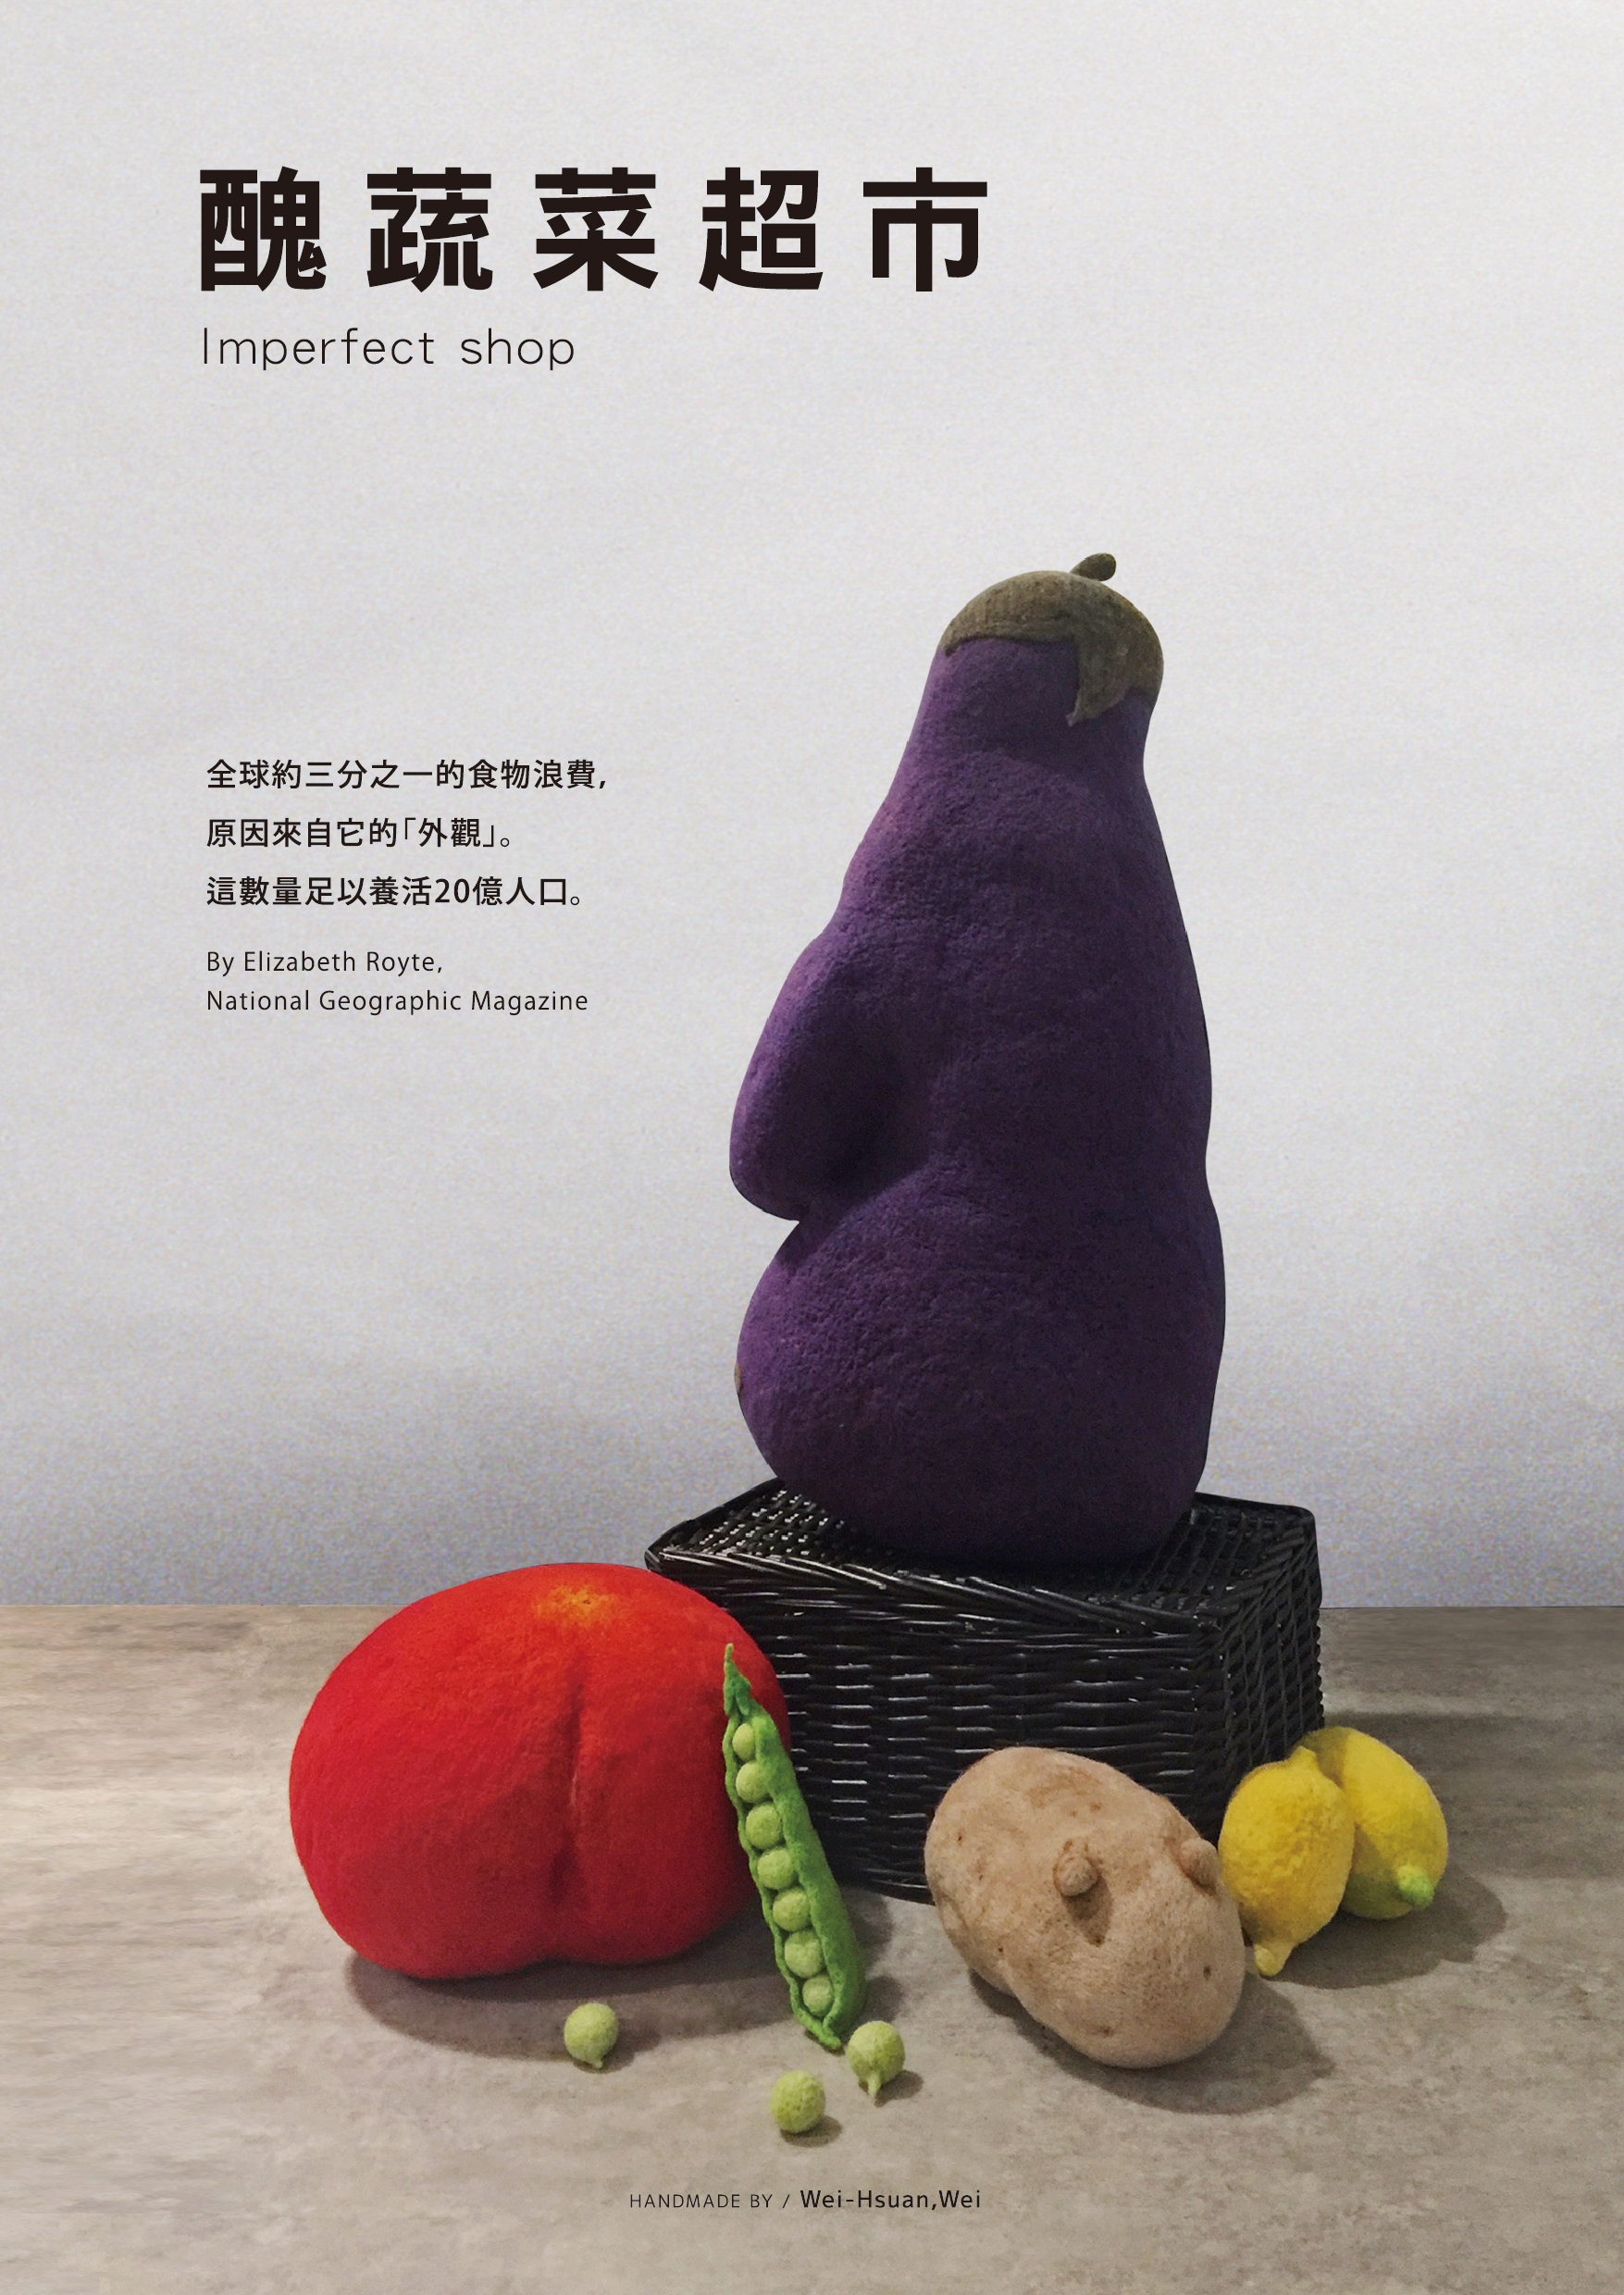 醜蔬菜超市 - 20170630180144-817002321.jpg(圖)